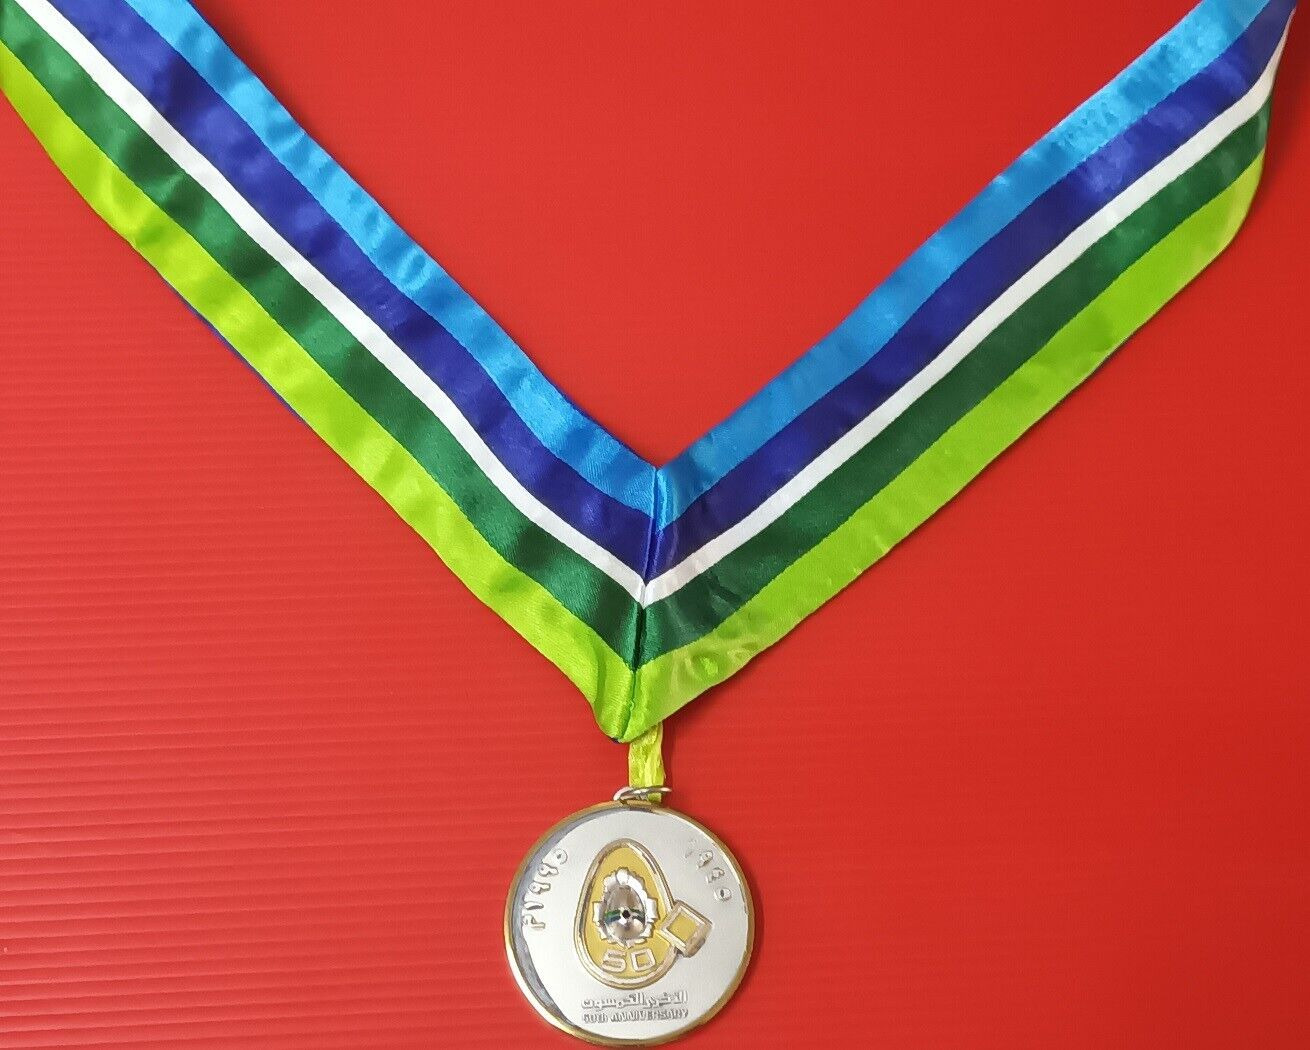 saudi- Saudia airlines Prince Sultan Bin Abdulaziz Footbal Medal 1995